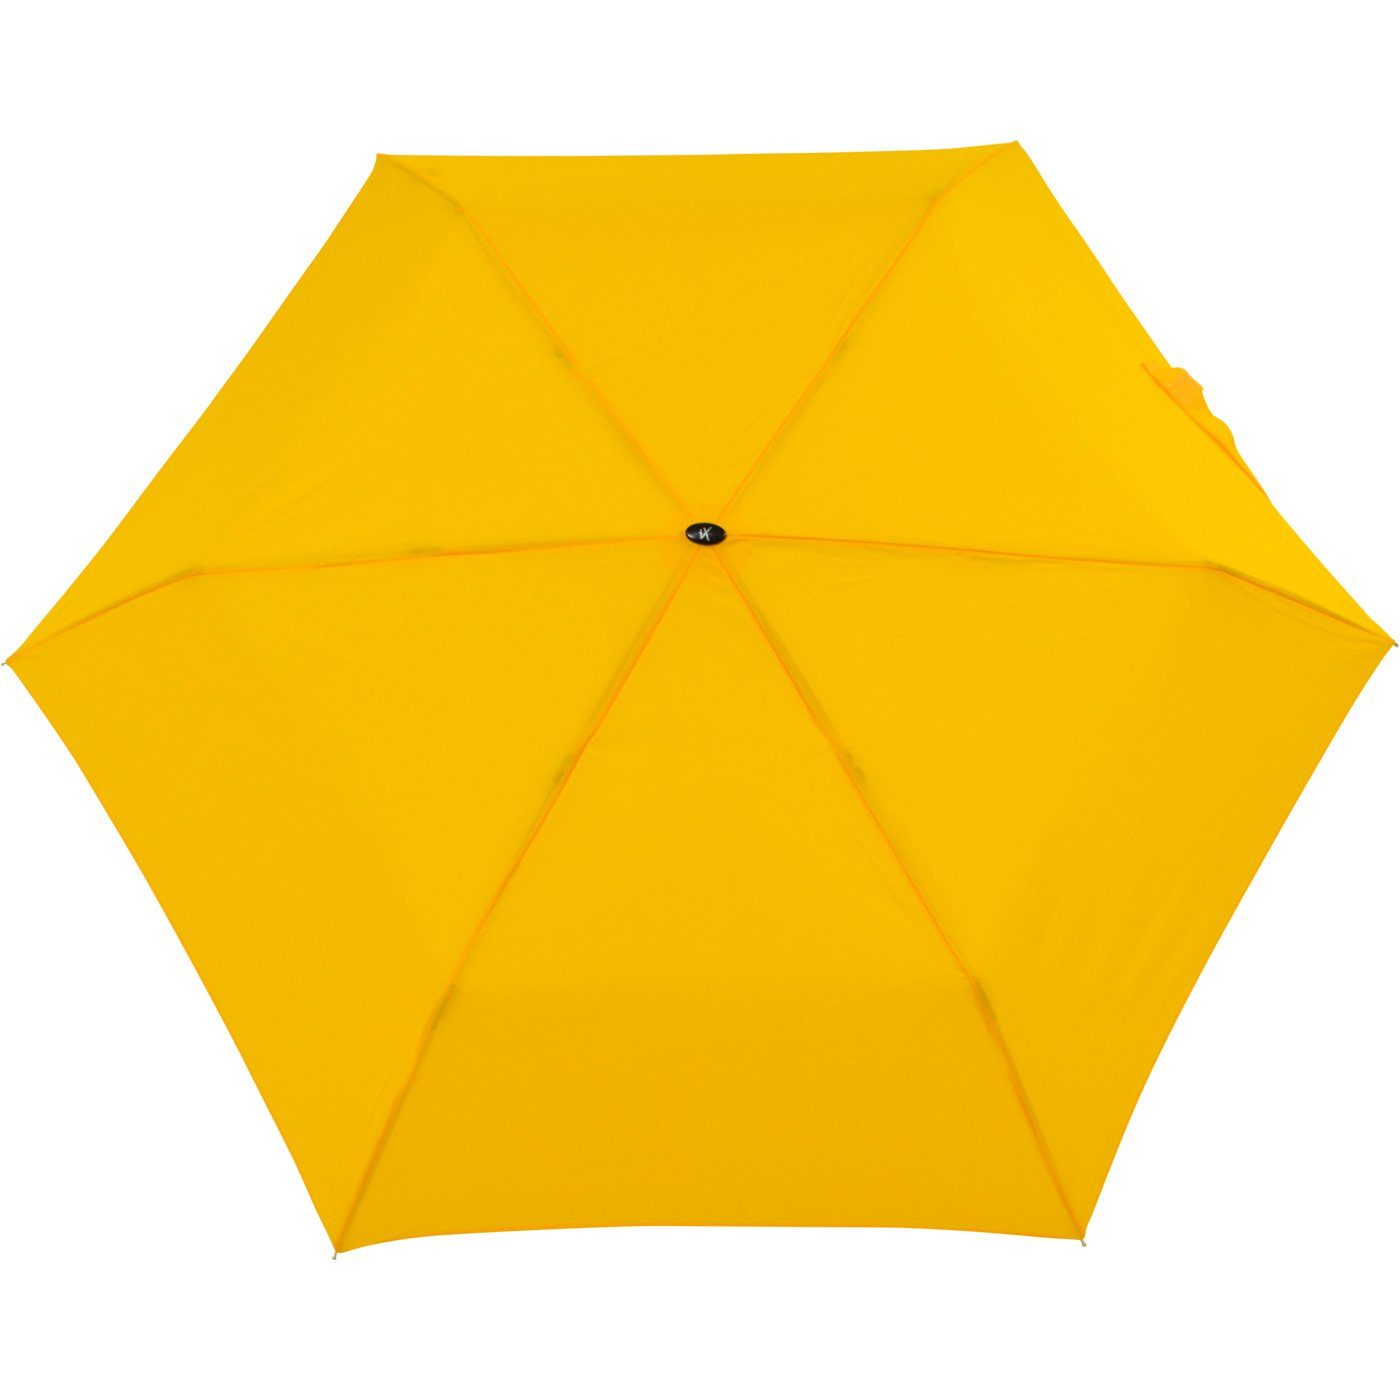 iX-brella Taschenregenschirm gelb Minischirm Flat nur extra-flach super Steel flacher 2,5cm hoch